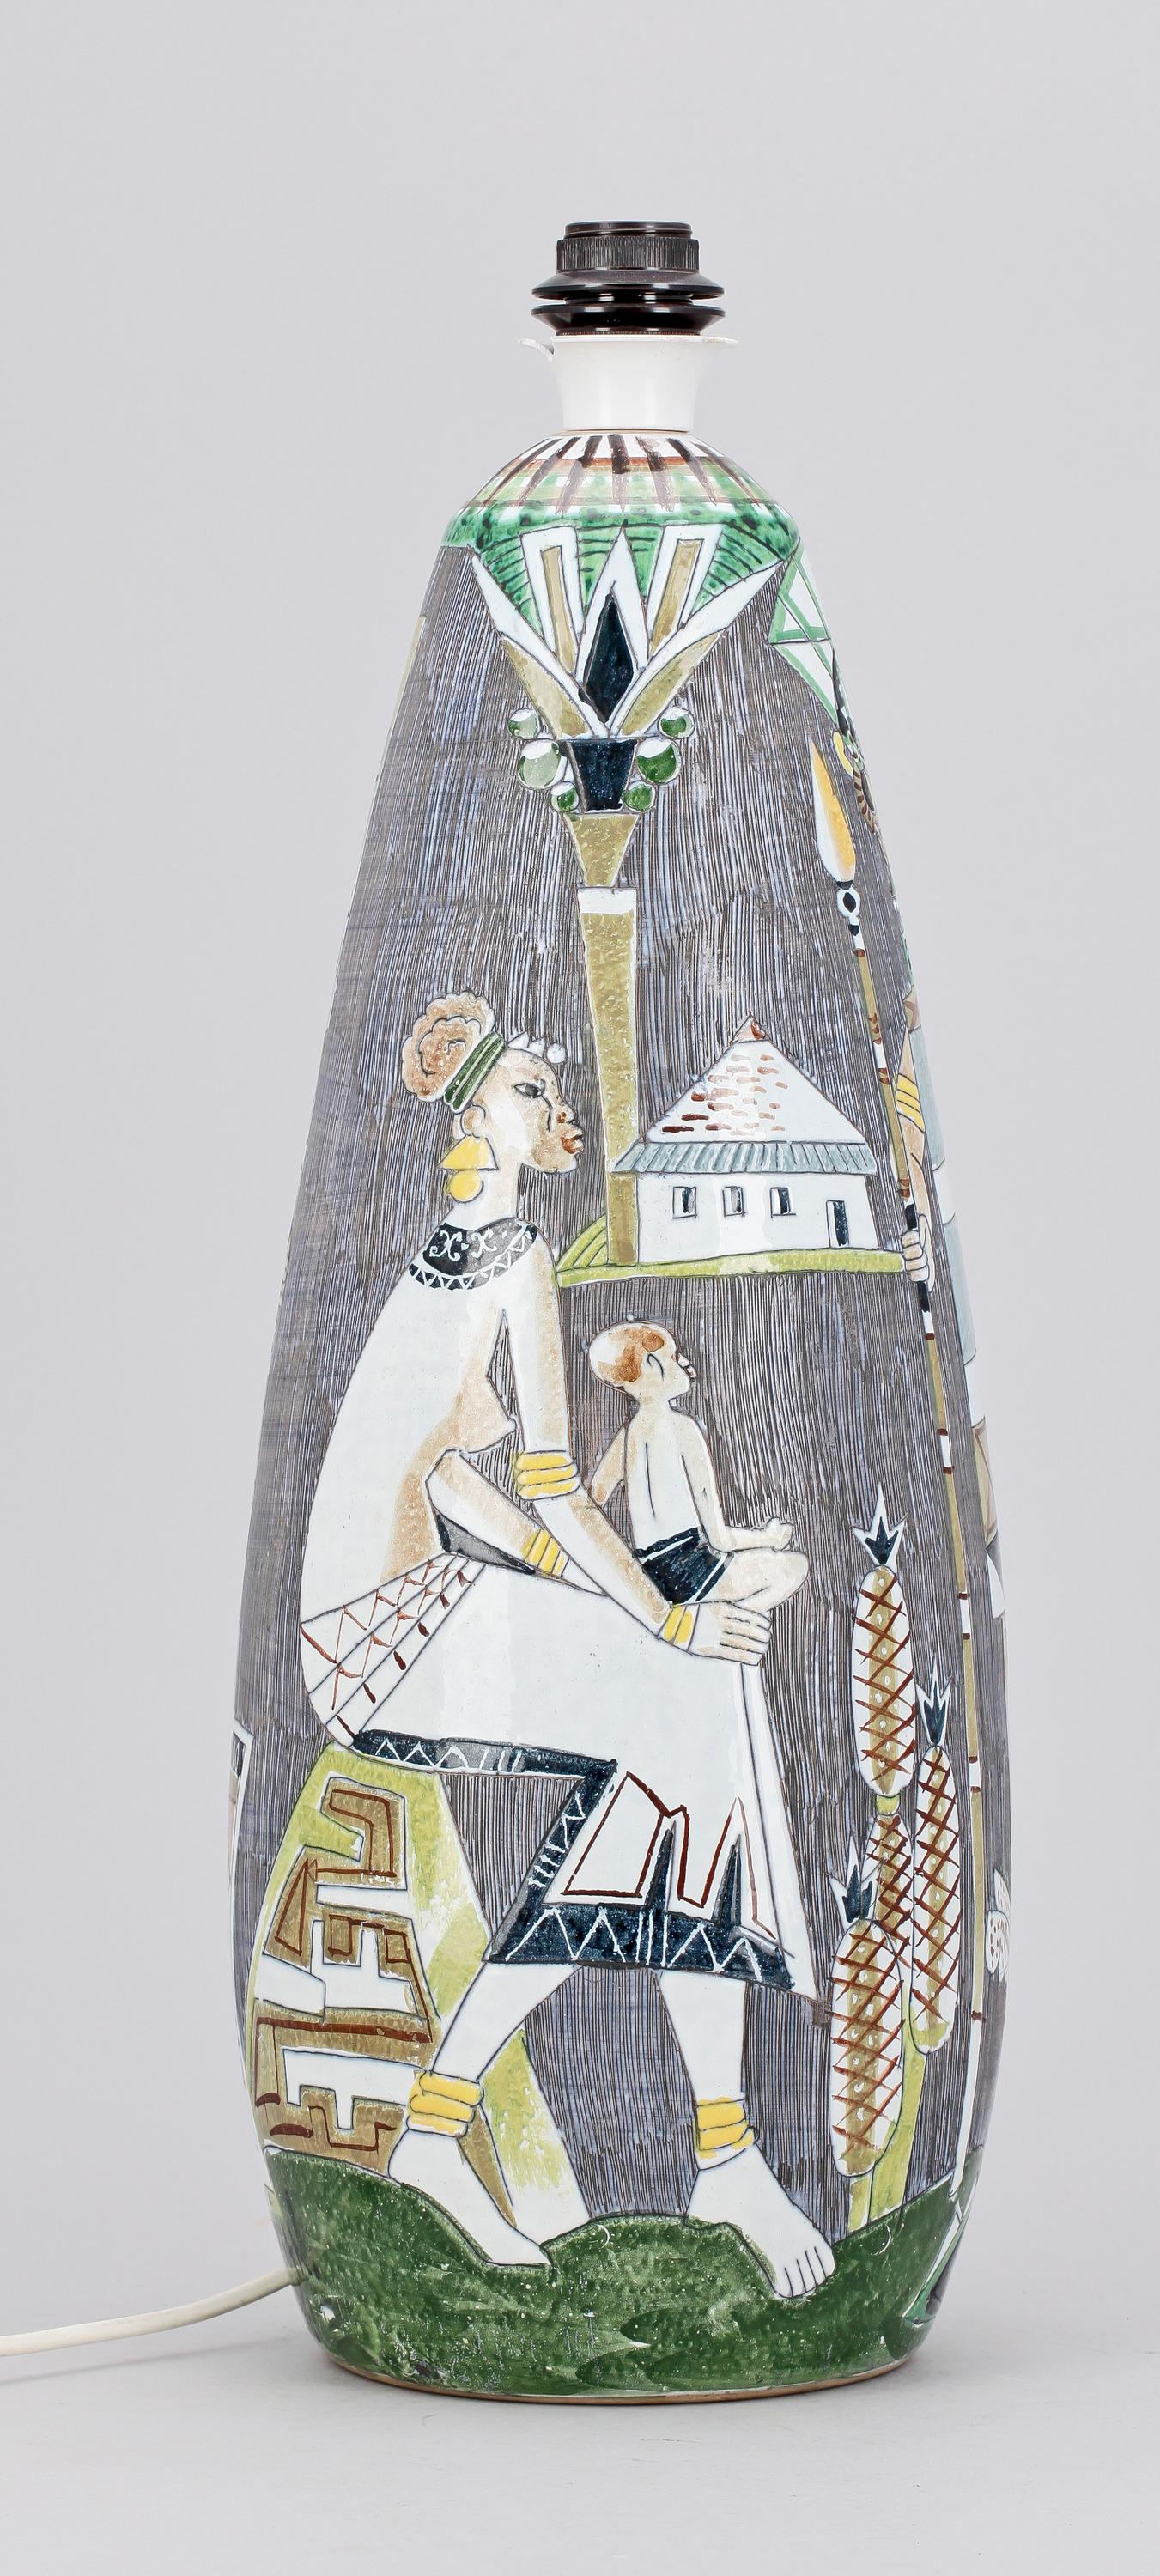 Lampada da terra in ceramica di Marian Zawadsky per Atelier Ailgmans, realizzata nel 1961. Decorata in policromia con scene figurative che raffigurano indigeni ispanici. Firmato e datato
Buono stato